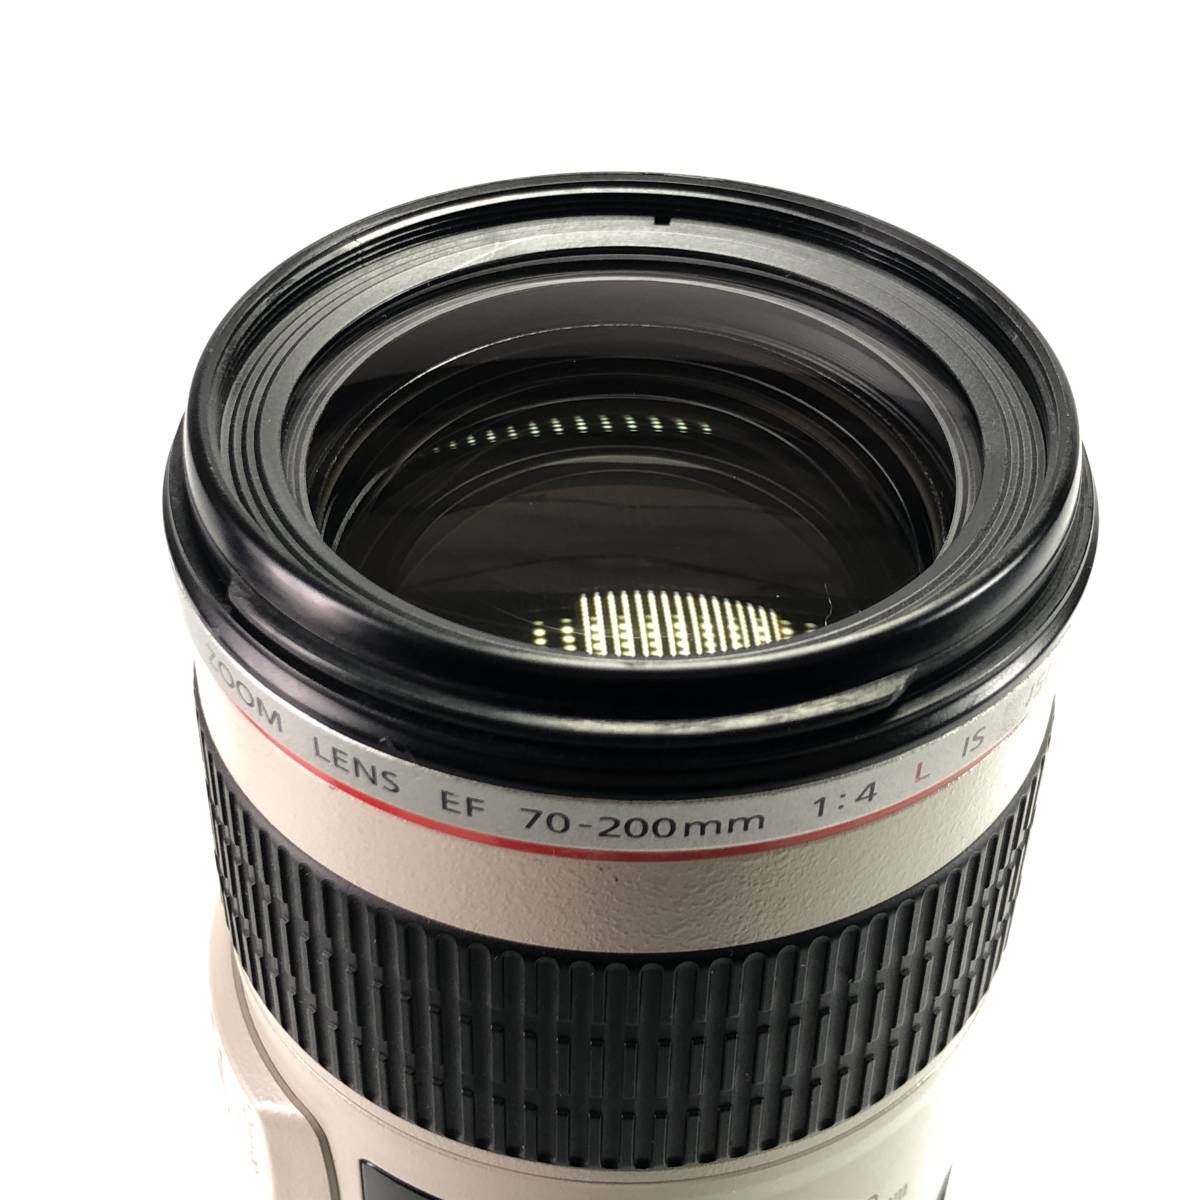 1スタ Canon EF 70-200mm F4 L IS USM キヤノン 望遠 ズーム レンズ 良品 1円 24B ヱOA4_画像3